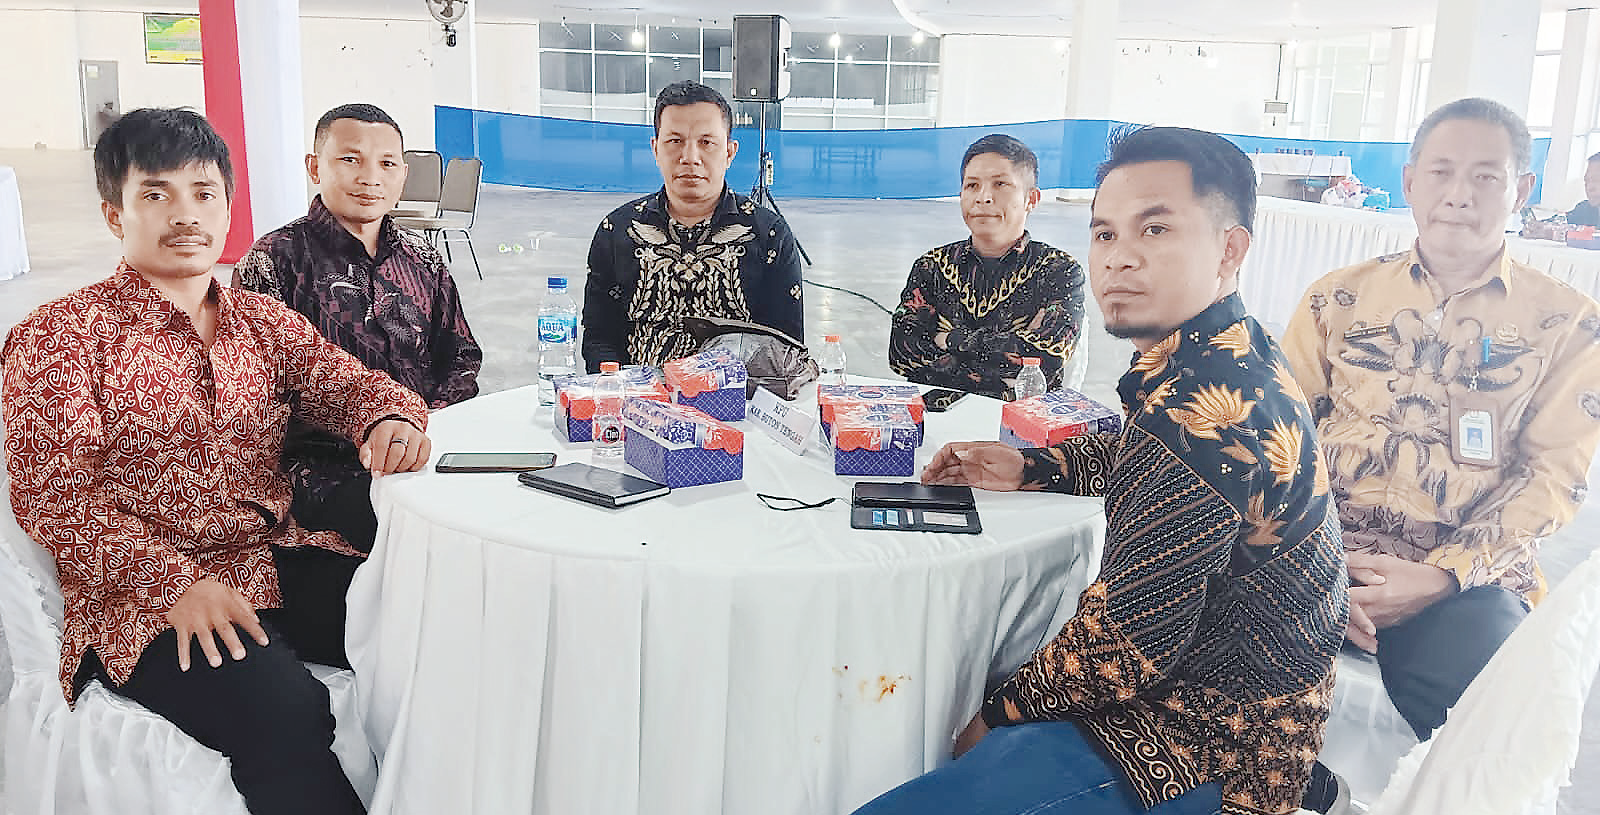 Ketua KPU Buteng, La Ode Abdul Jinani (tiga kiri) bersama anggota KPU Buteng mengikuti kegiatan bimtek di Kabupaten Kolaka, beberapa waktu lalu. (KPU BUTENG FOR KENDARI POS)